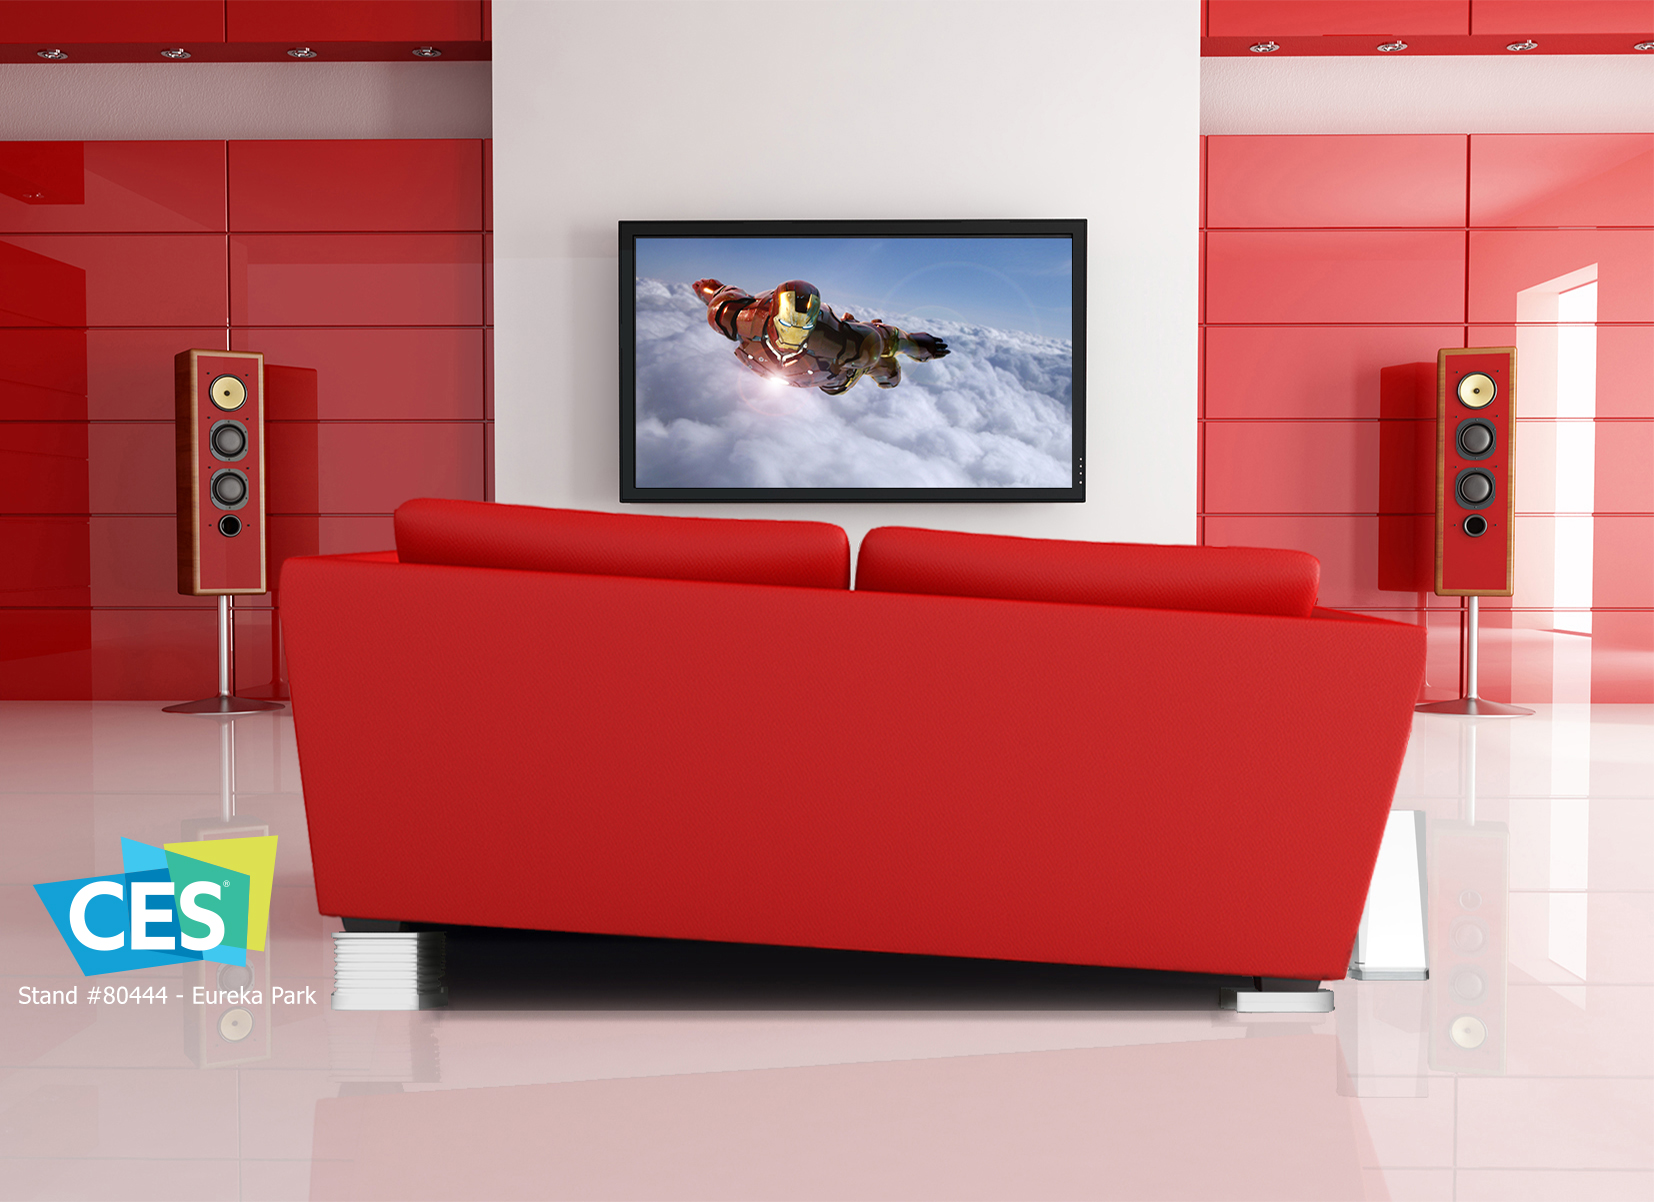 Il divano si muove, vibra e reagisce: Immersit porta la realtà virtuale a casa vostra